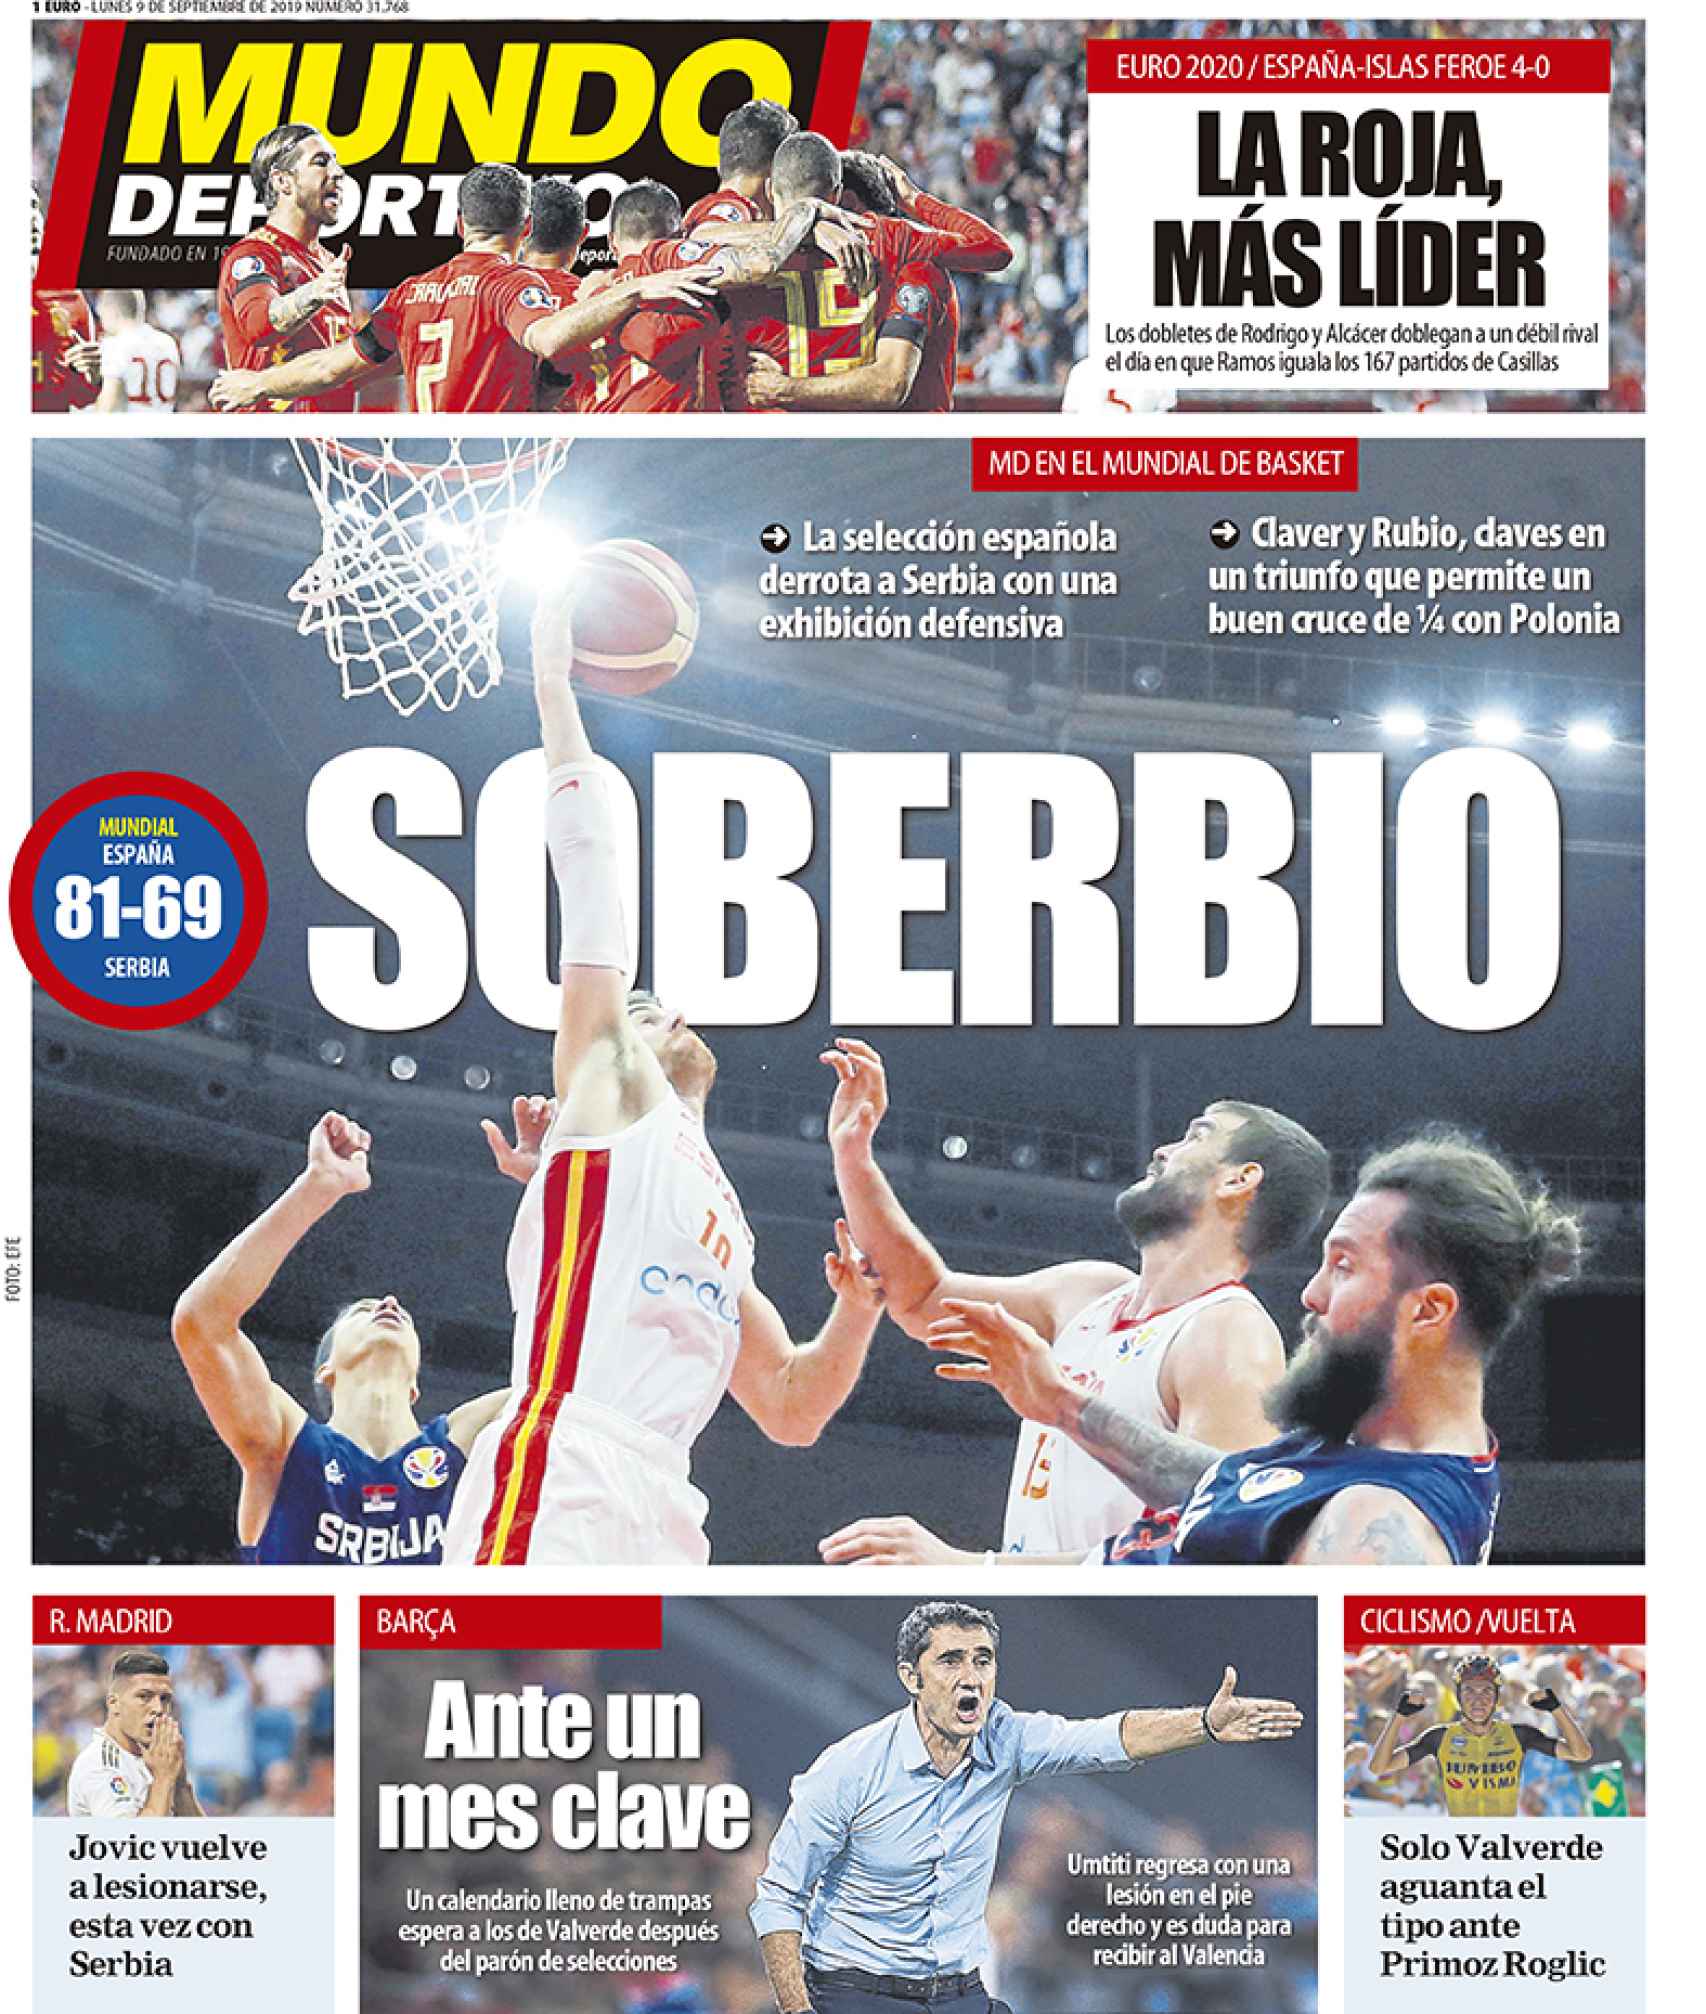 La portada del diario Mundo Deportivo (09/09/2019)